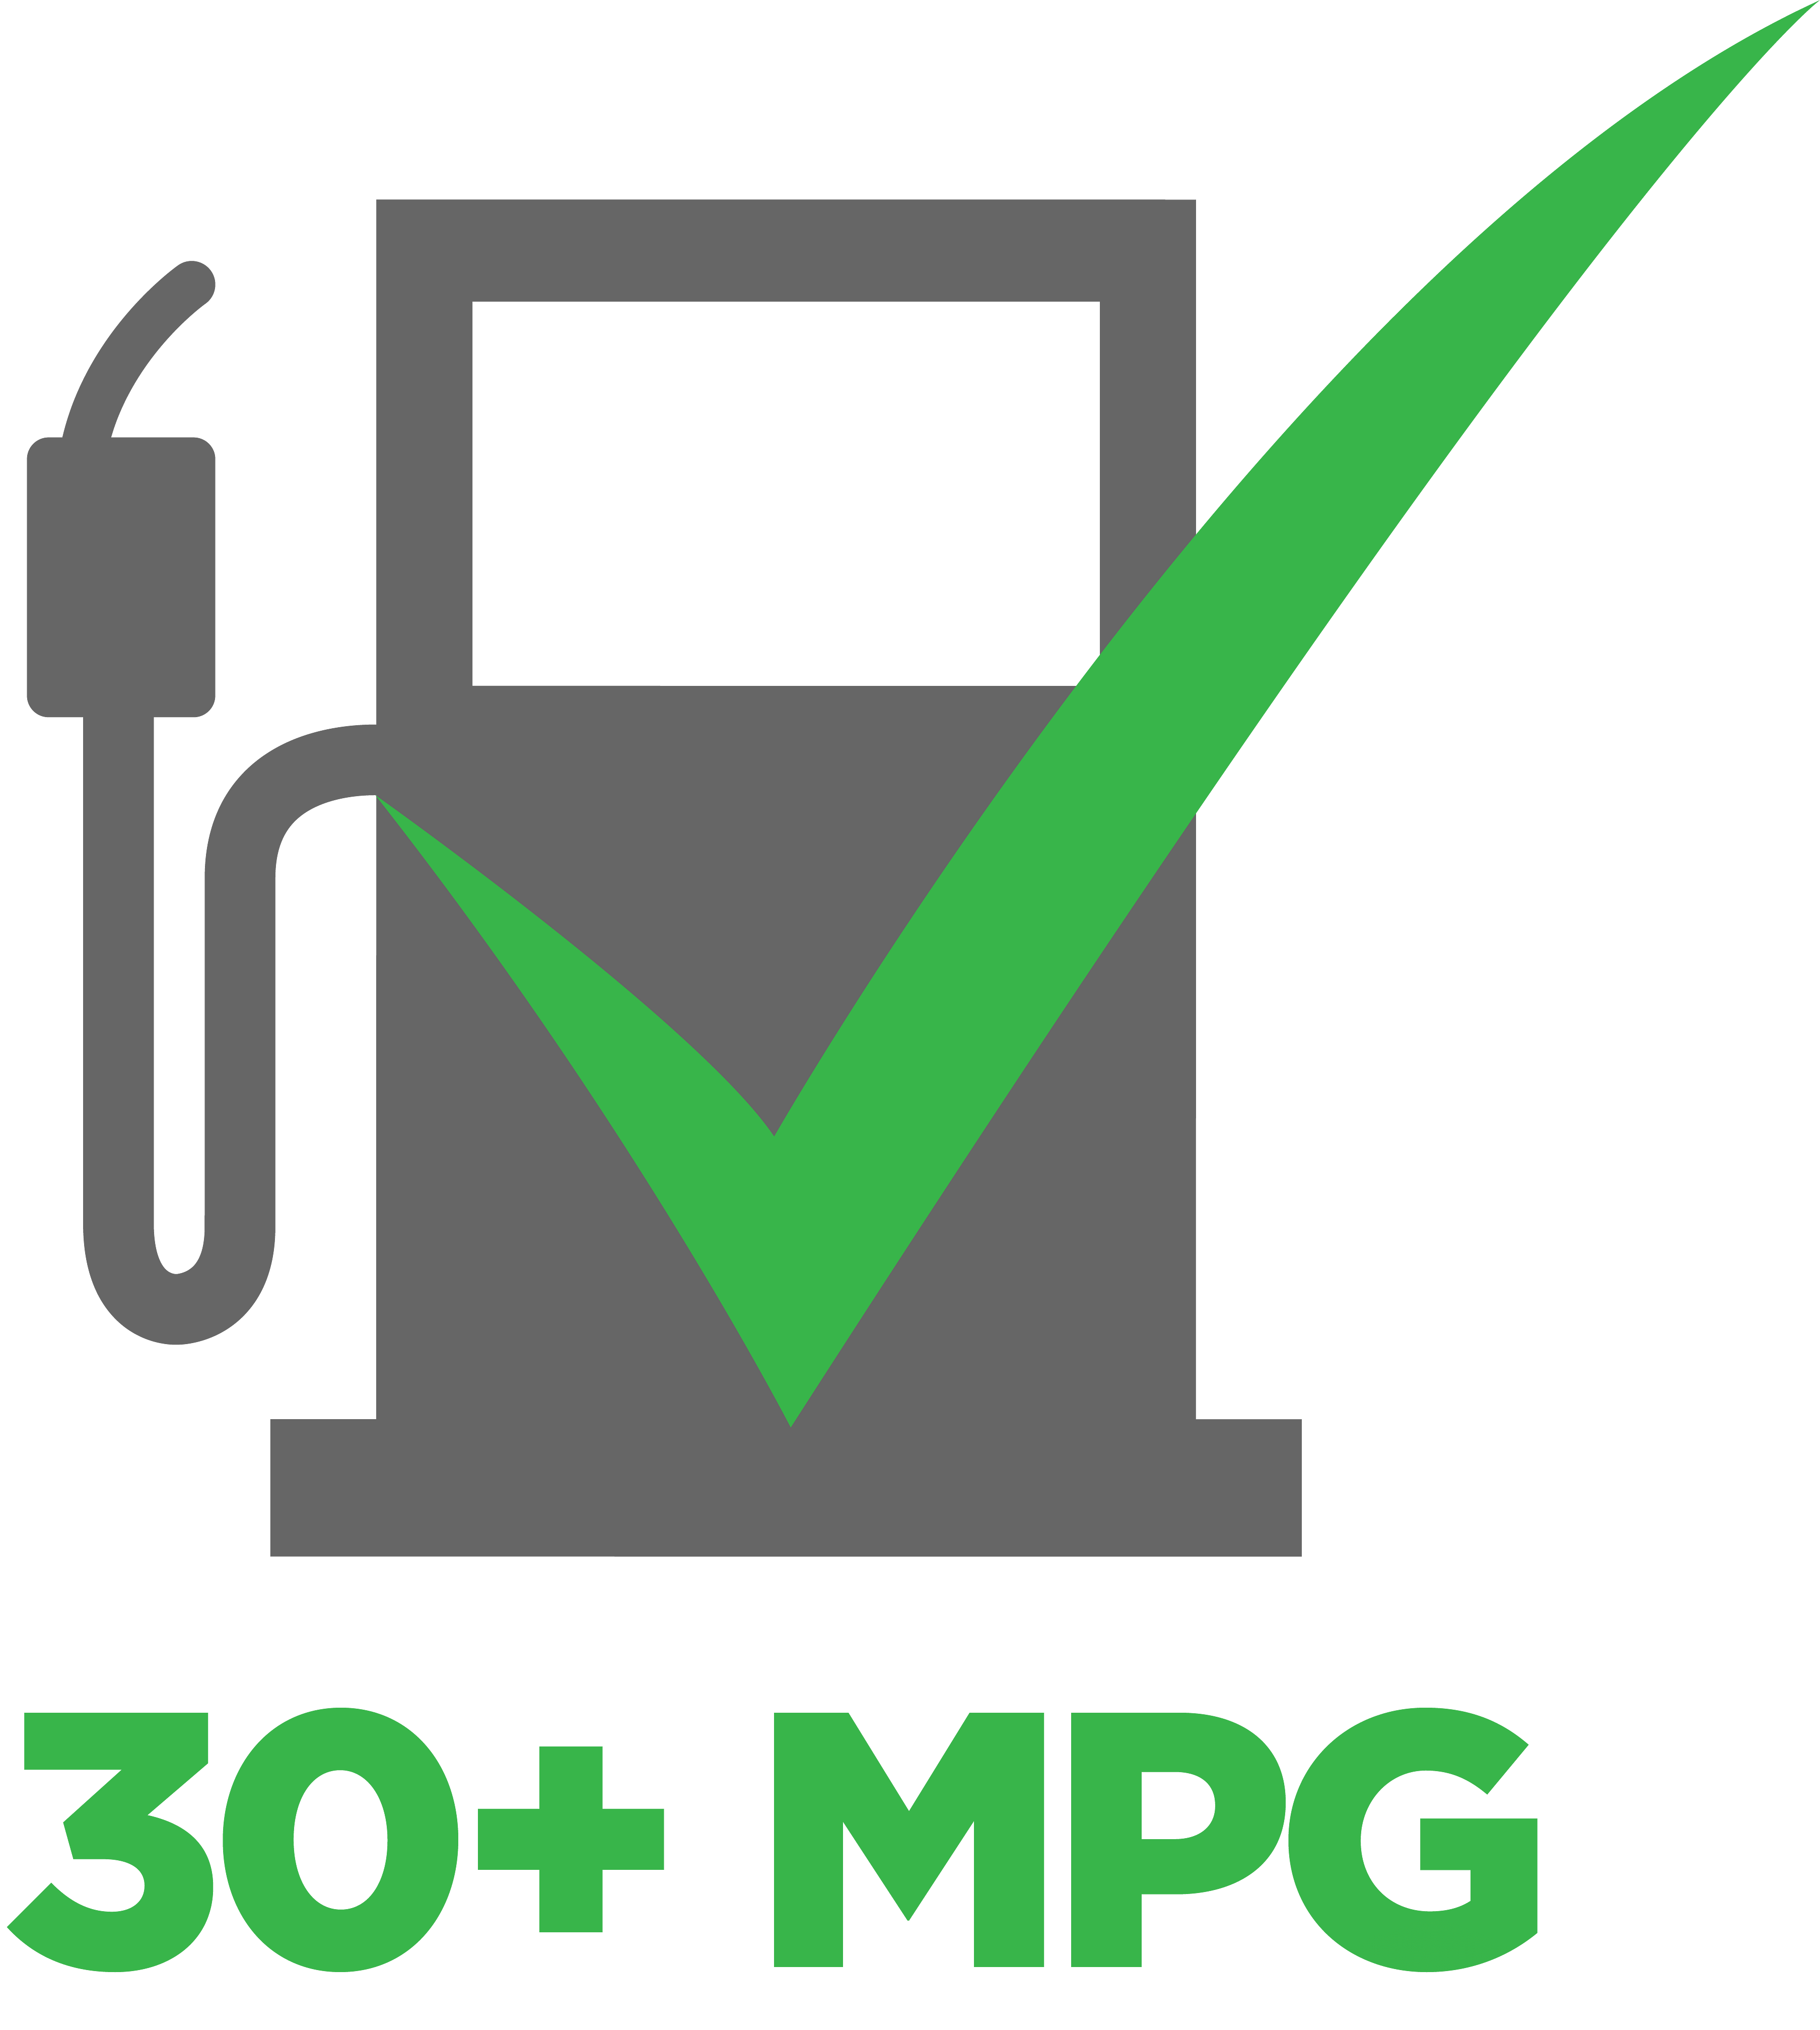 Fuel Economy 30+ Mpg Icon